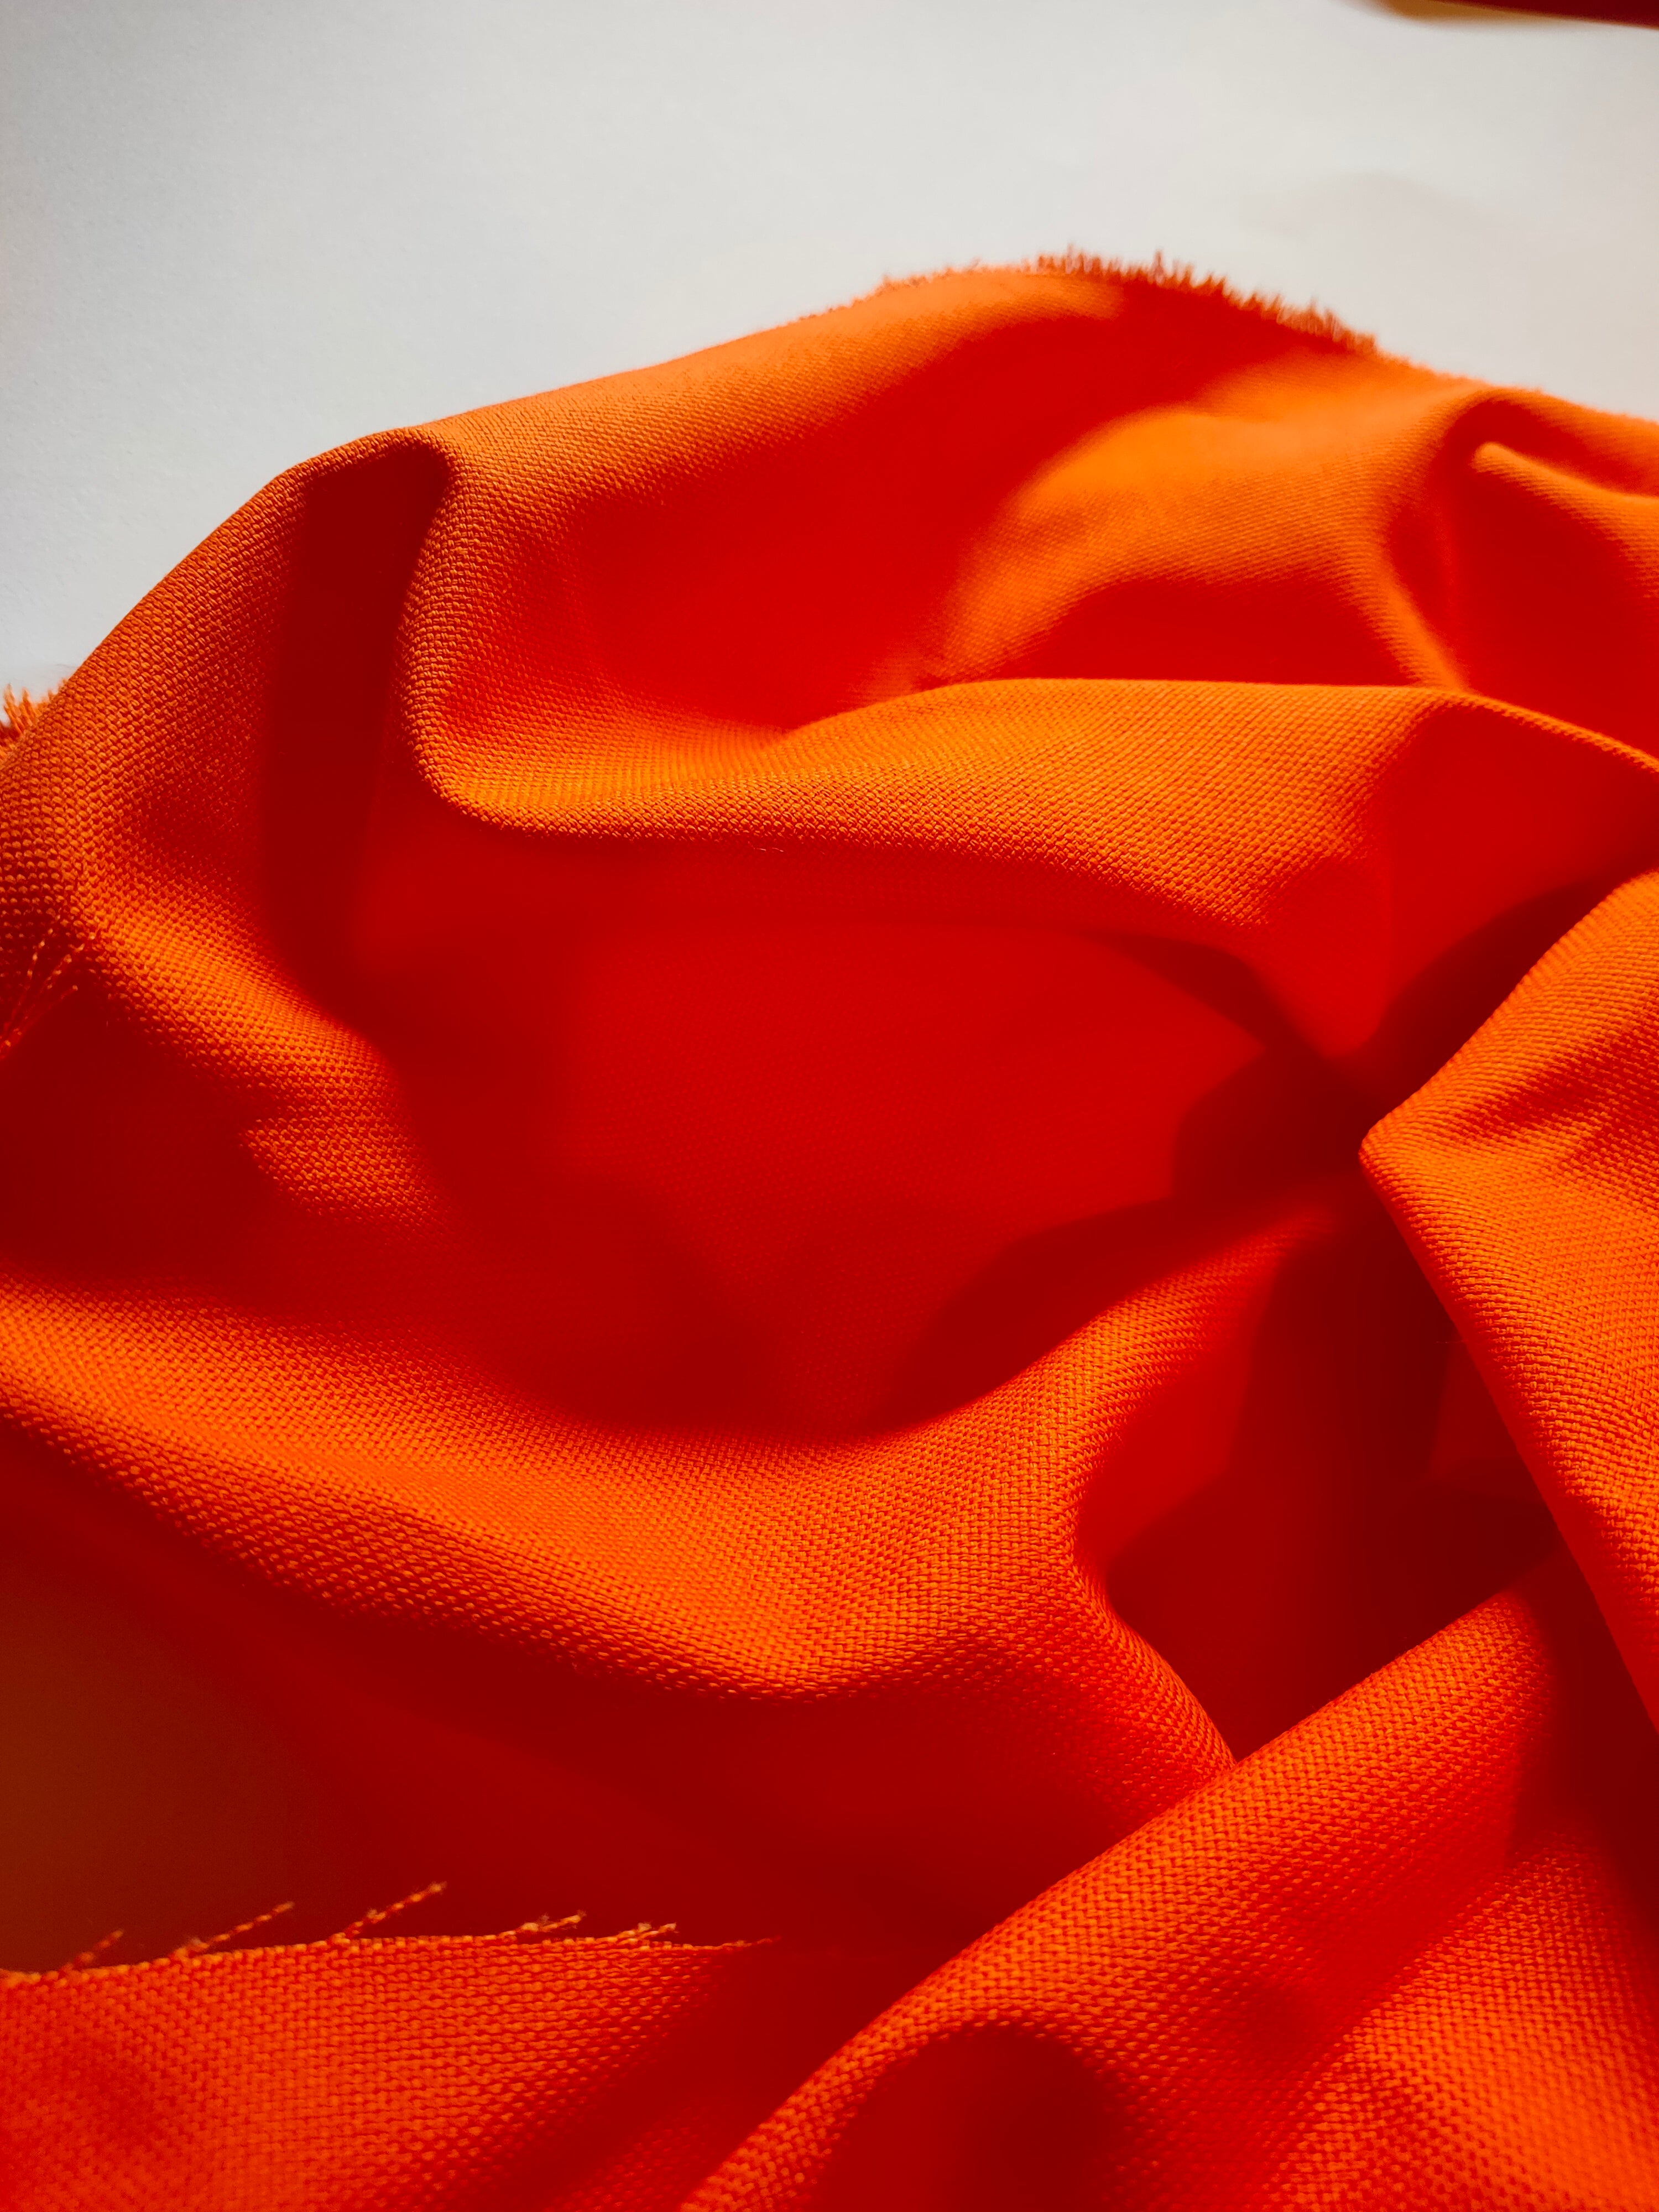 Toile de coton orange, détail de la matière en gros plan, effets de plis.